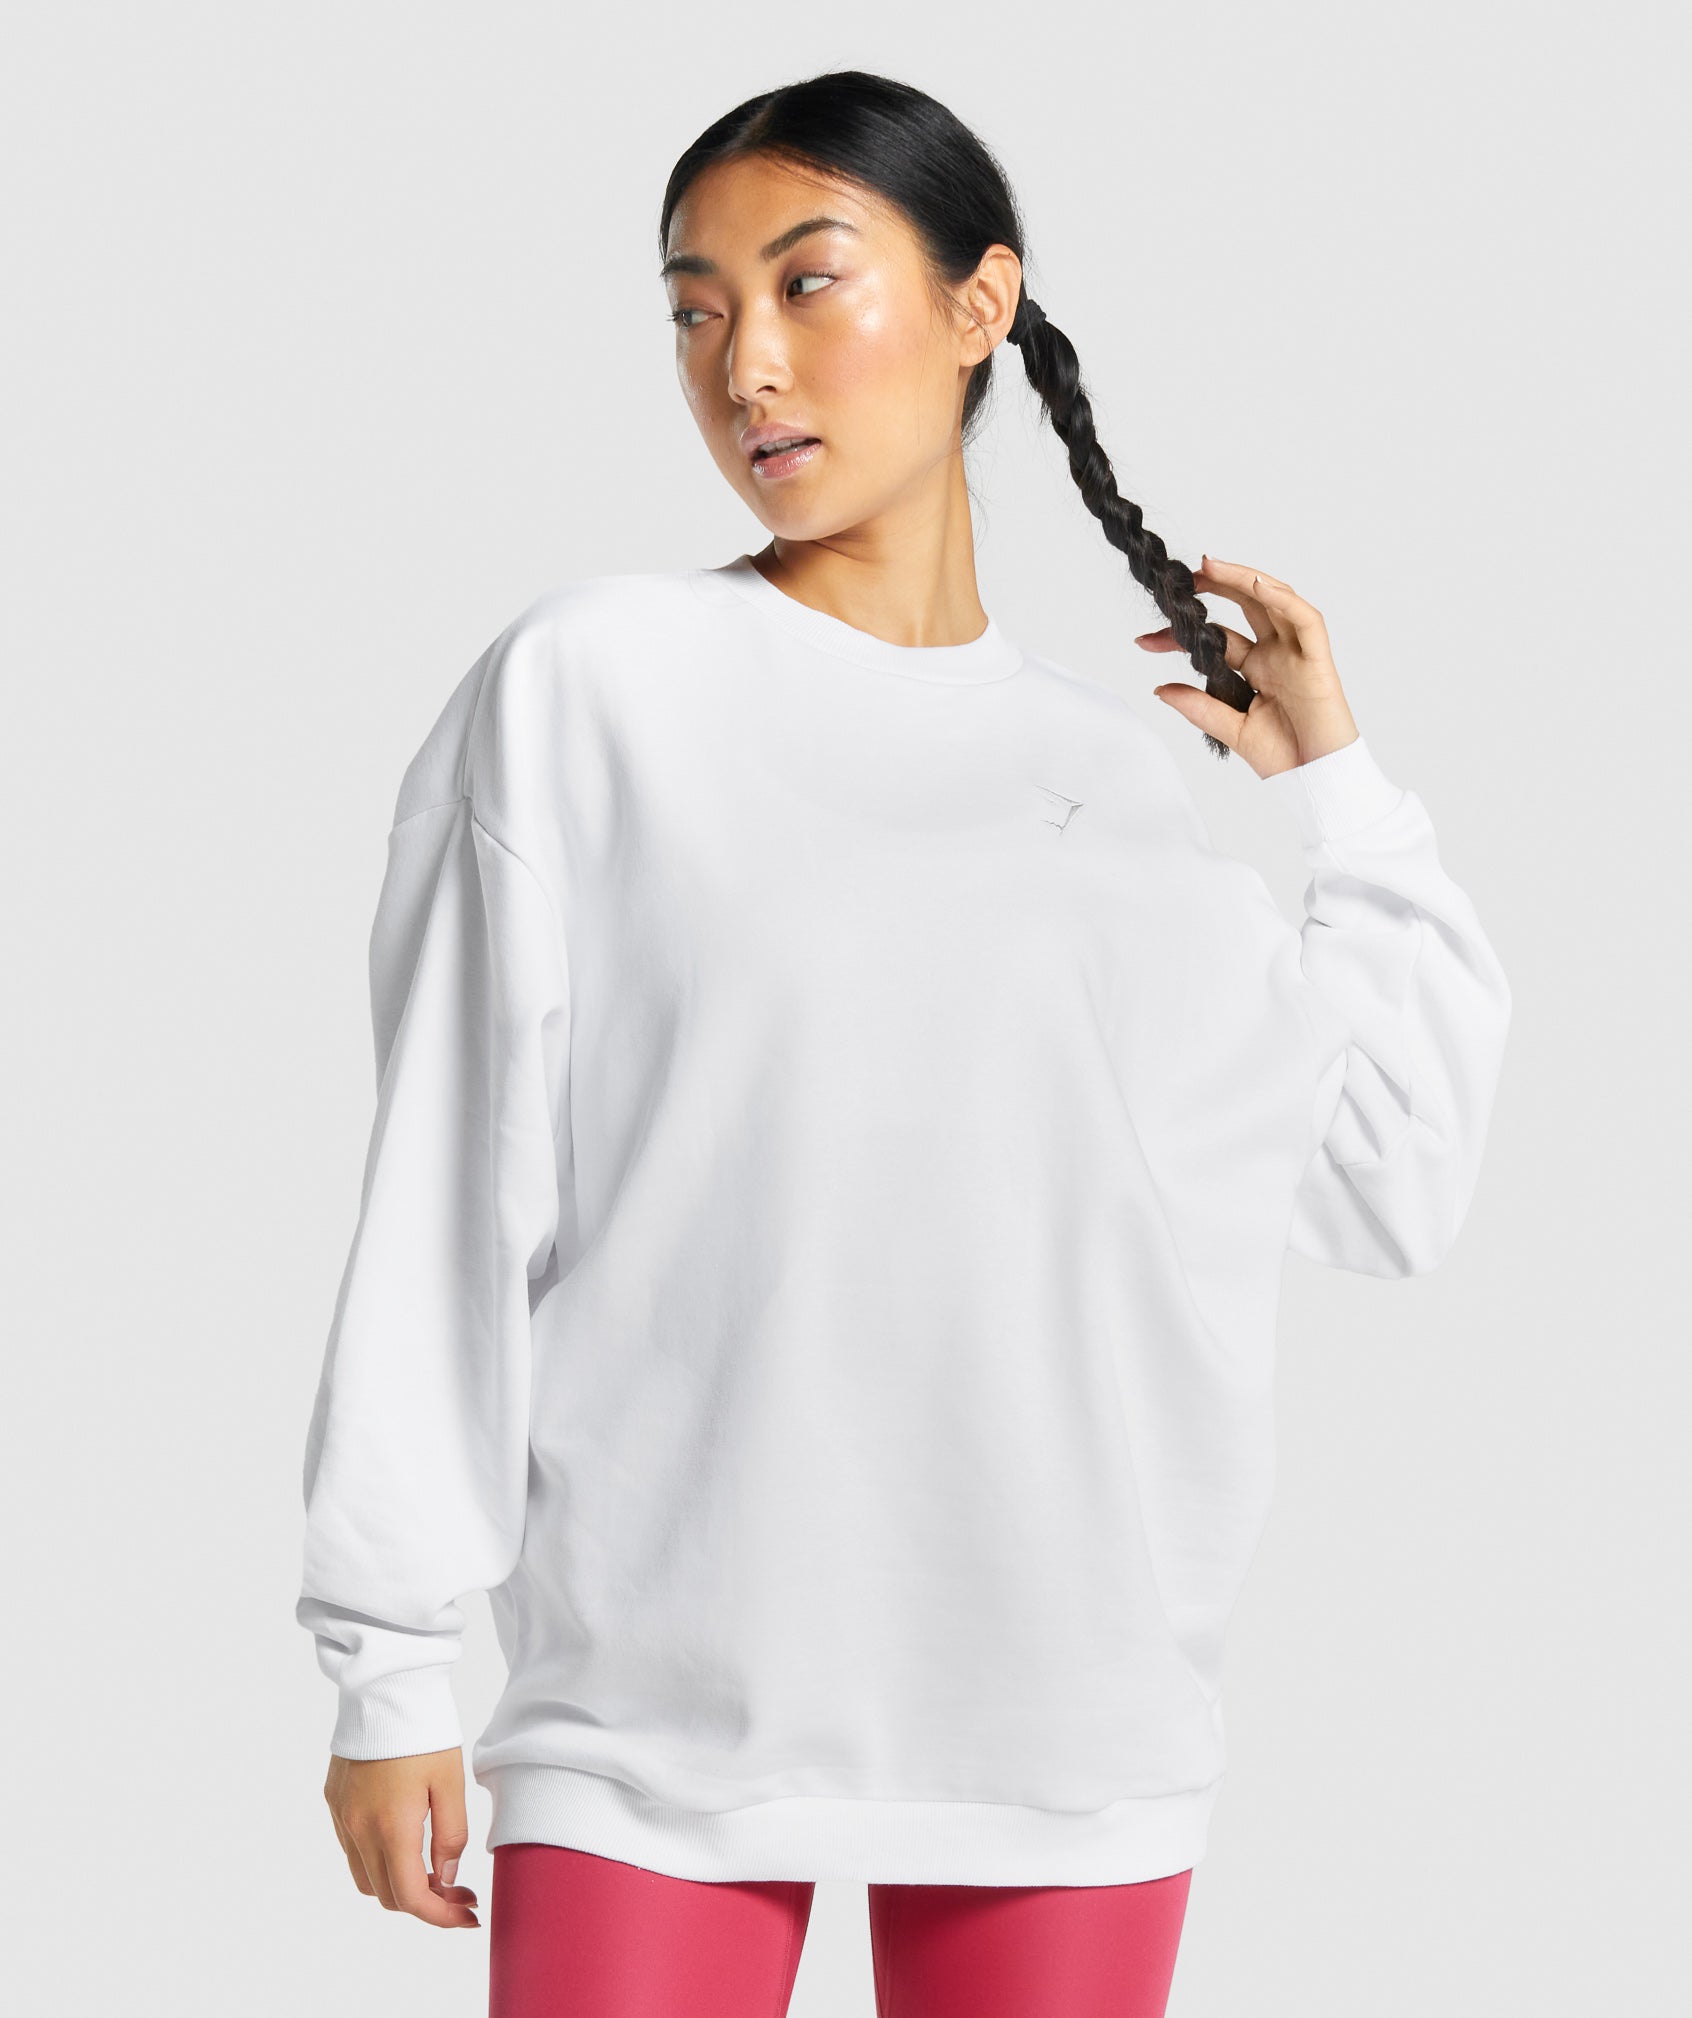 Women's Sweatshirts & Gym Sweatshirts - Gymshark